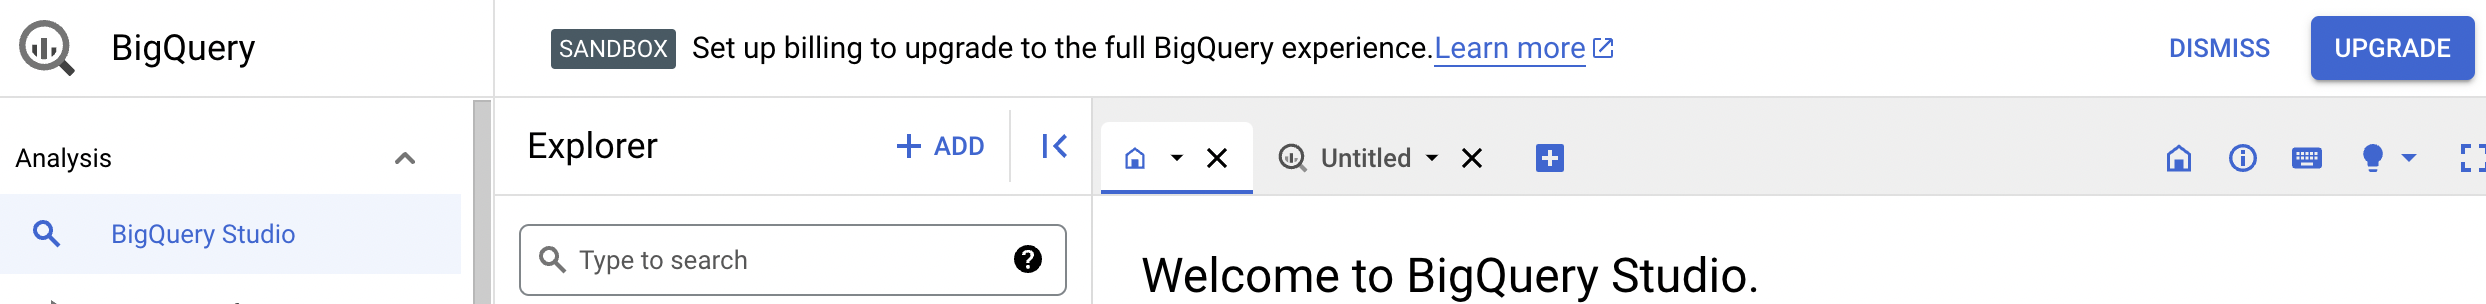 La notifica di conferma offre la possibilità di eseguire l'upgrade all'esperienza BigQuery completa.